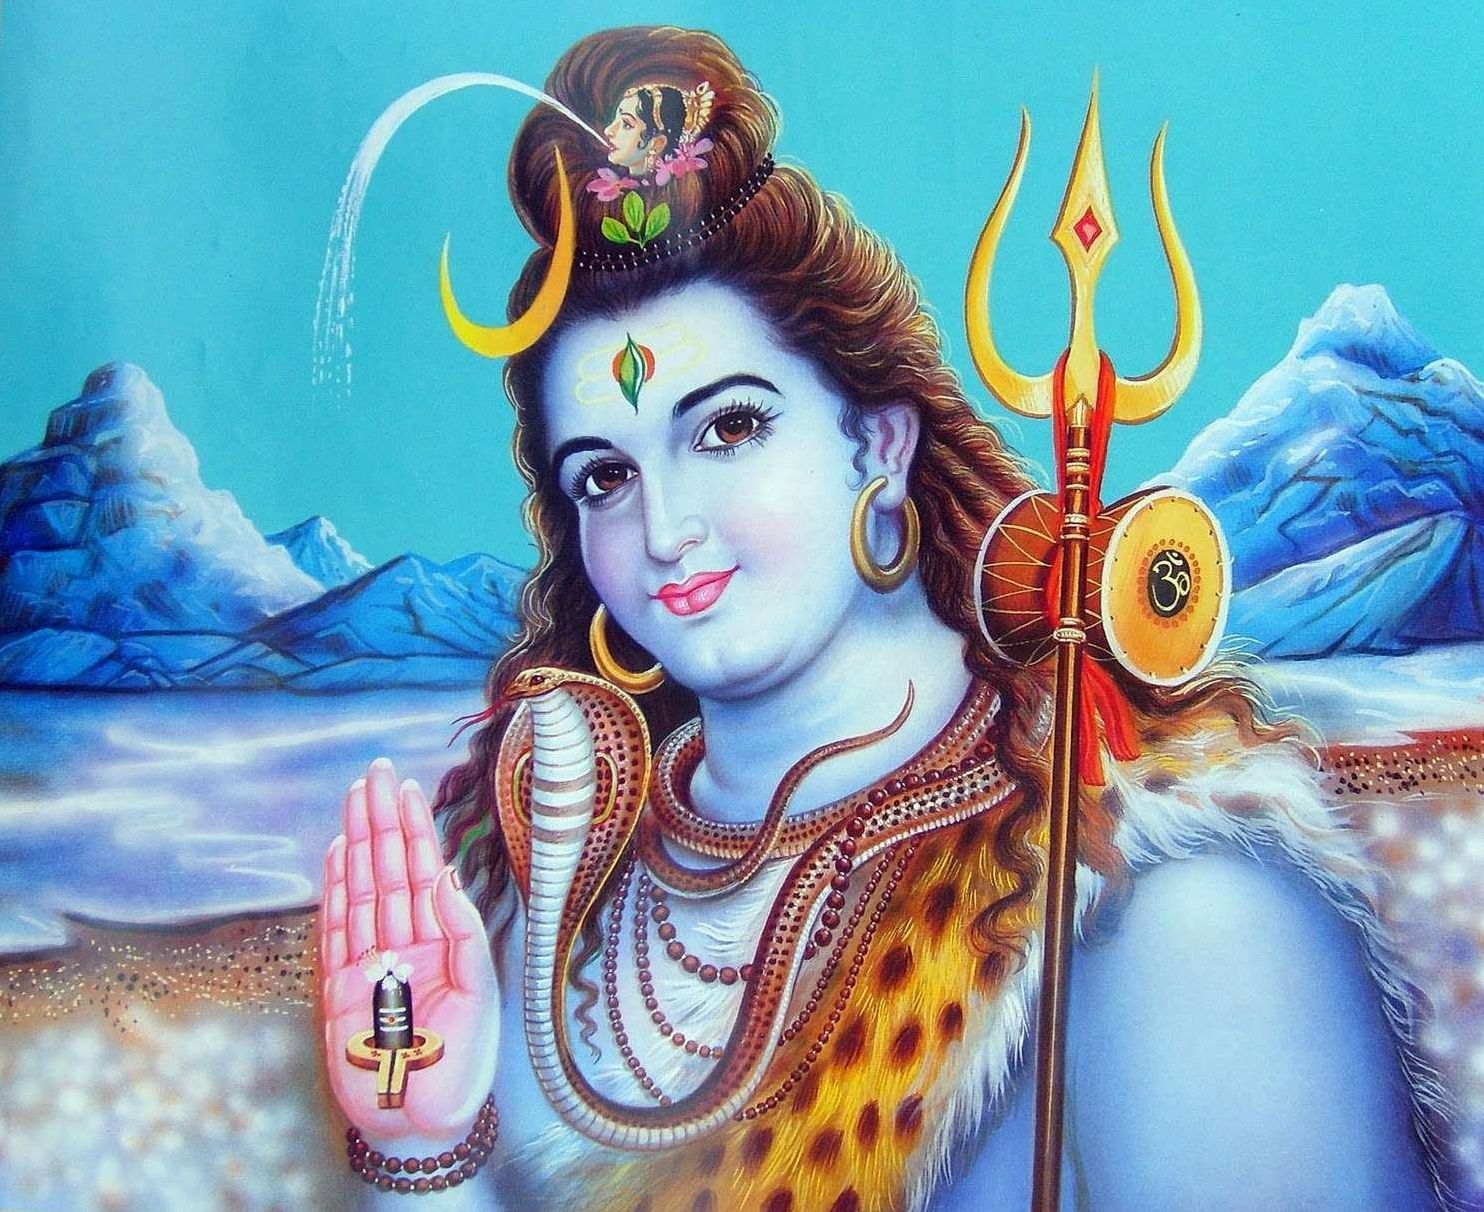 Shiva Wallpaper. Shiva God Wallpaper, Shiva Wallpaper and Powerful Lord Shiva Wallpaper